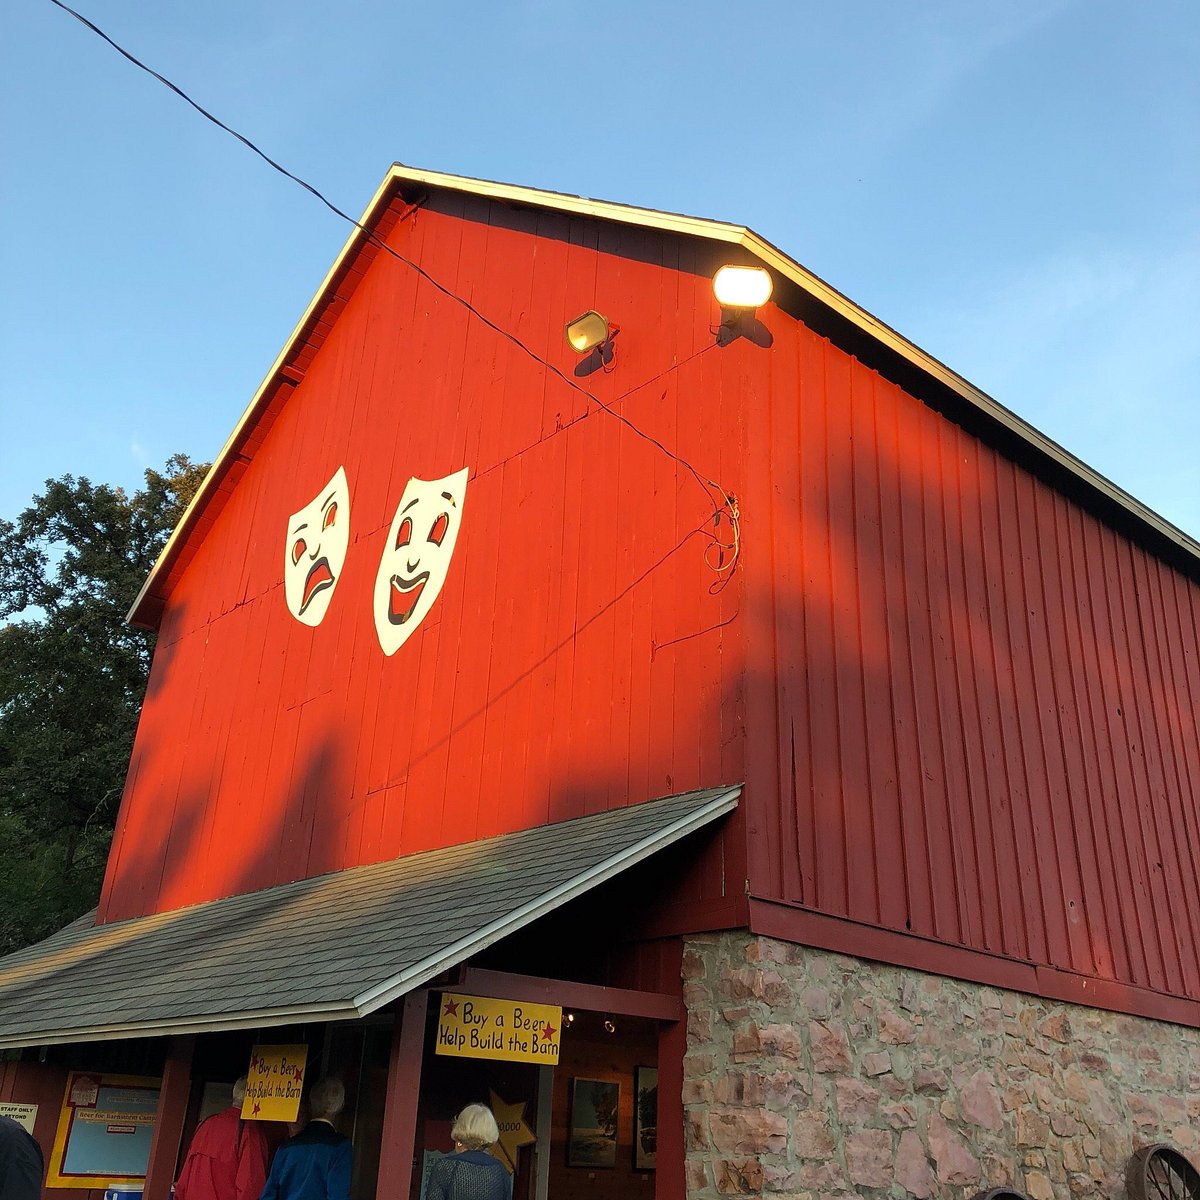 Red Barn Theatre (Rice Lake) 2022 Lohnt es sich? (Mit fotos)